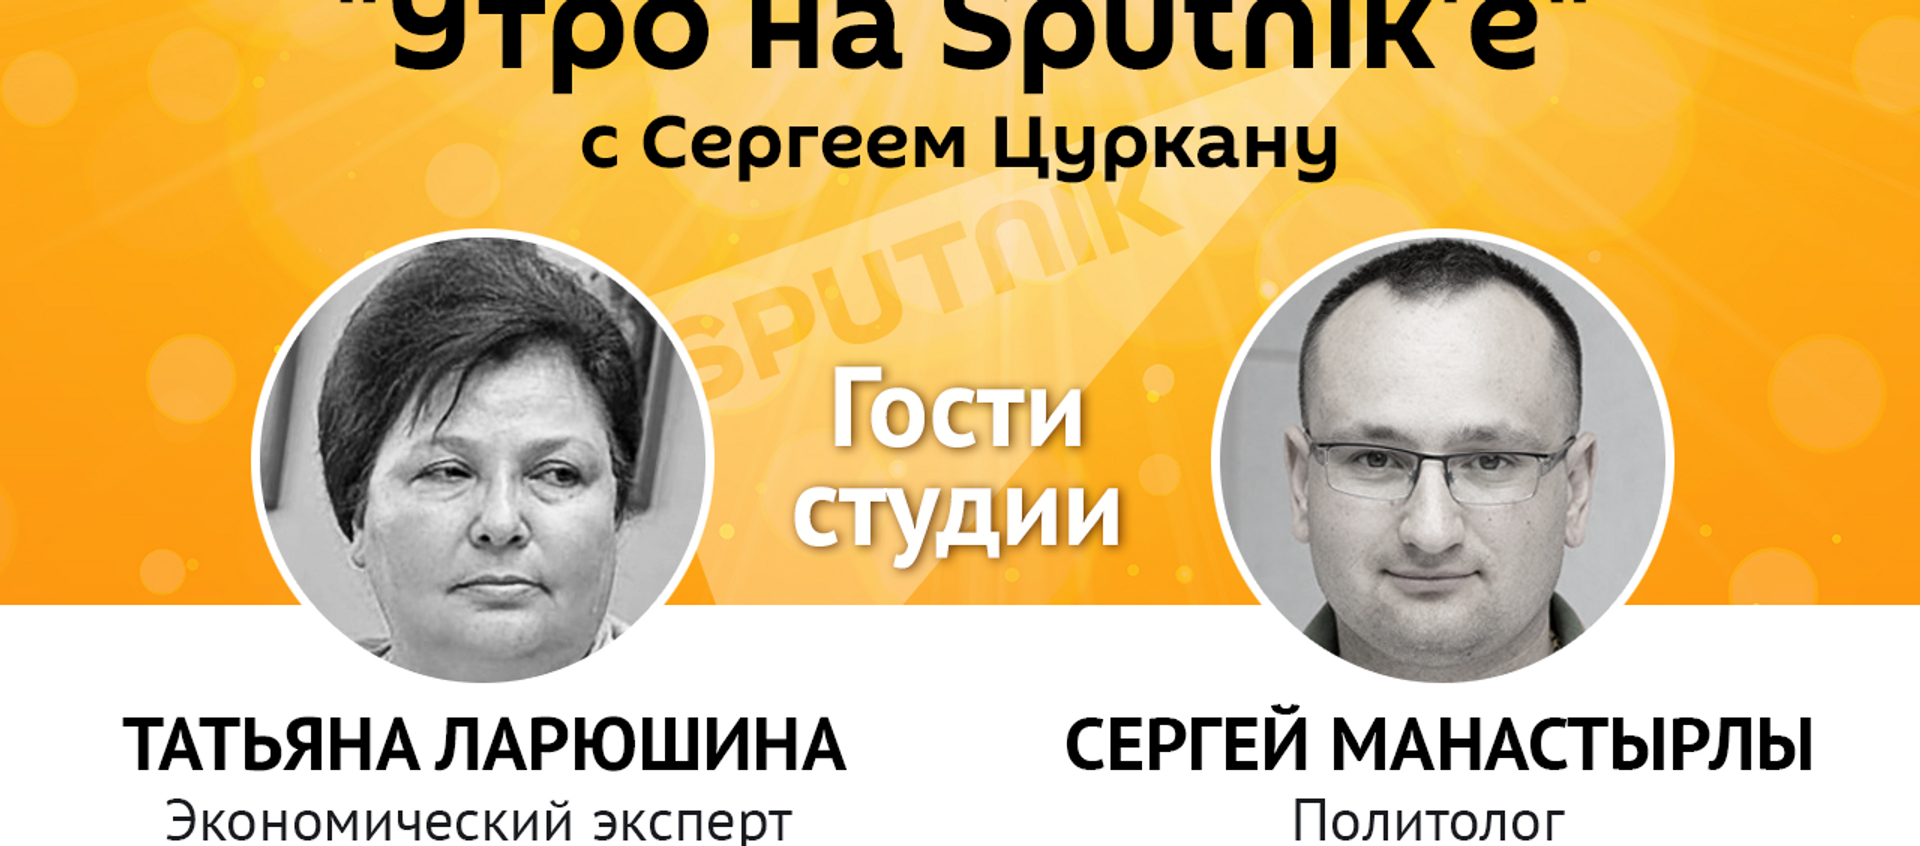 Утро на Sputnik'e: как досрочные выборы скажутся на Молдове - Sputnik Молдова, 1920, 29.03.2021